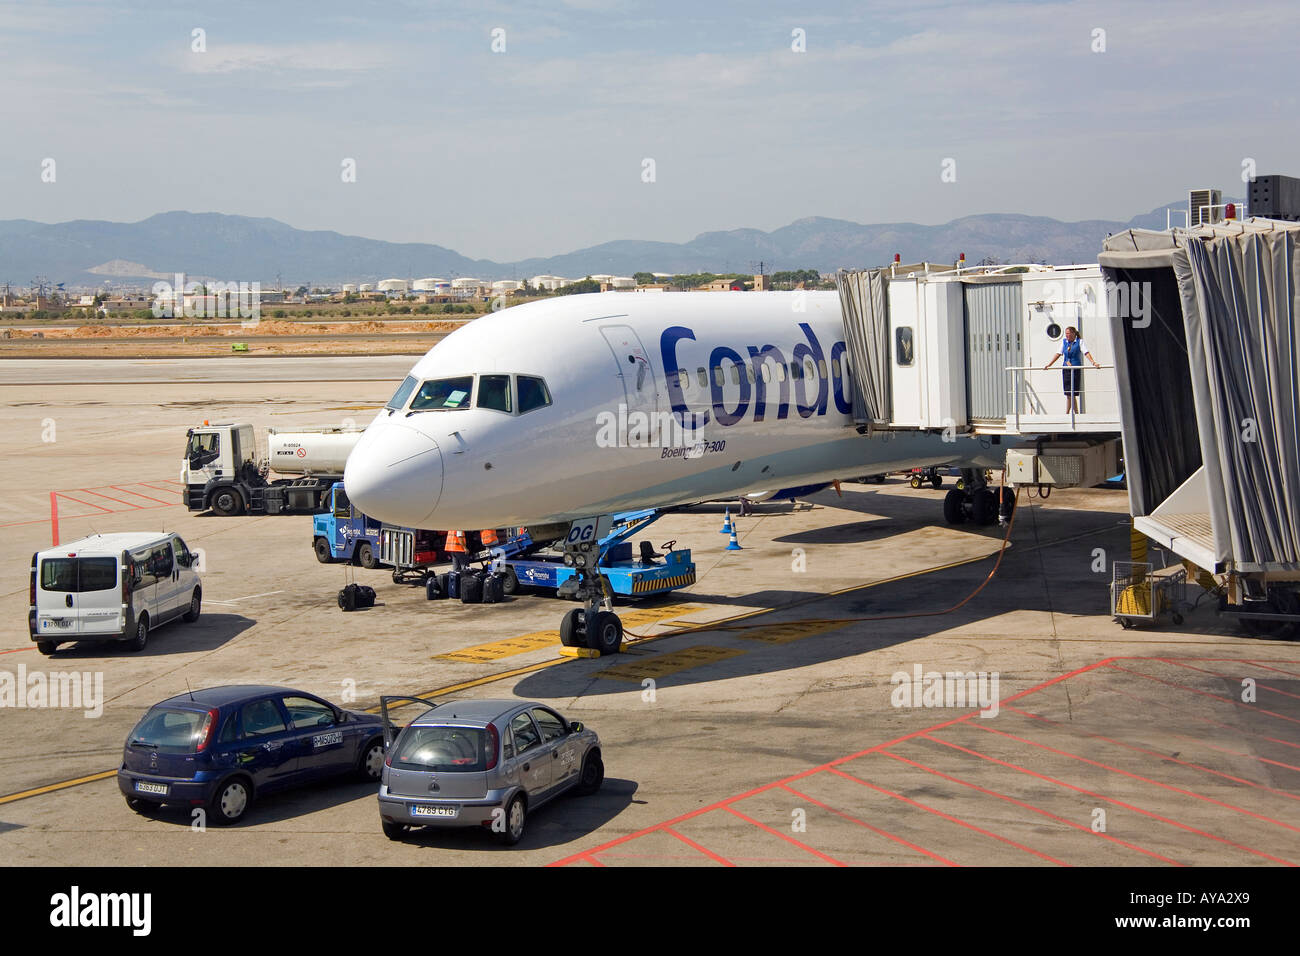 Ein Flugzeug der deutschen Fluggesellschaft Condor während es gewartet wird, Palma De Mallorca, Balearen, Spanien Stockfoto